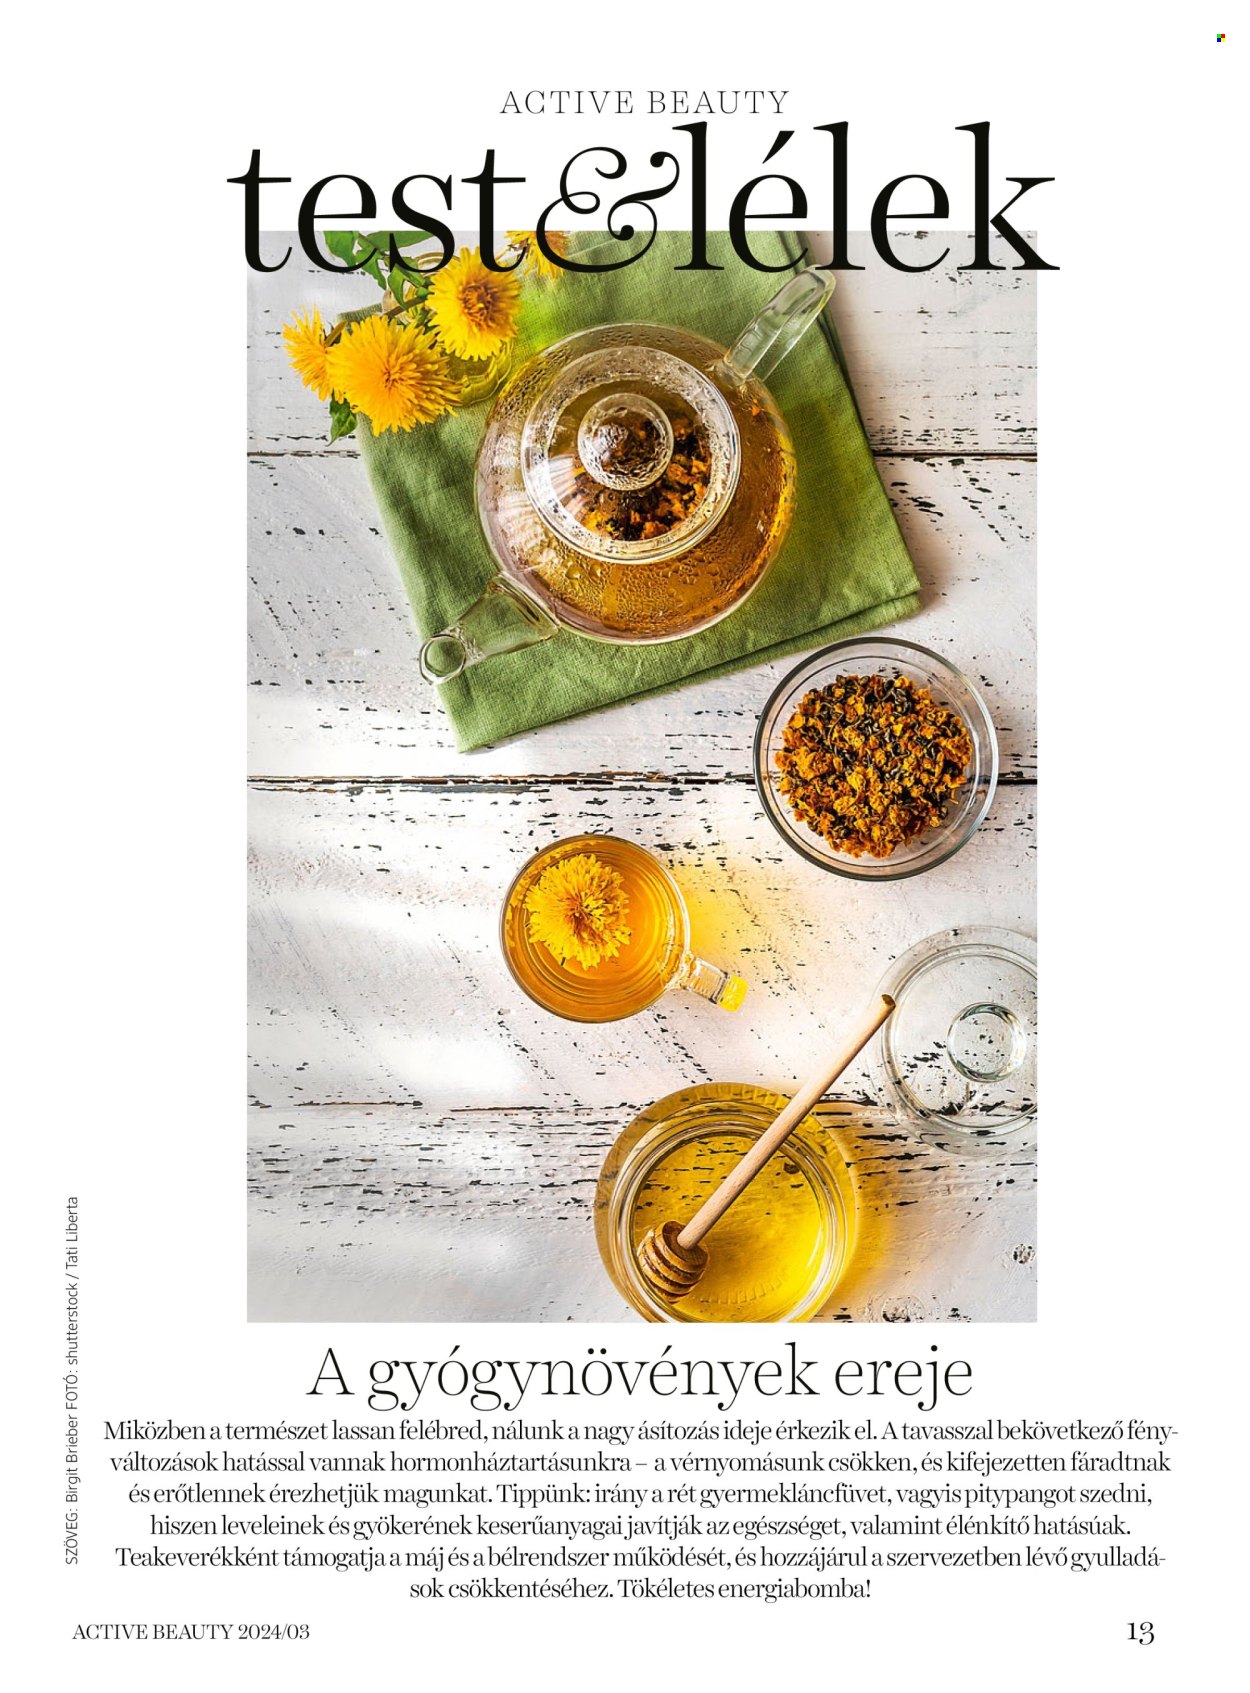 dm drogerie markt akciós újság érvényes: . 13. oldal